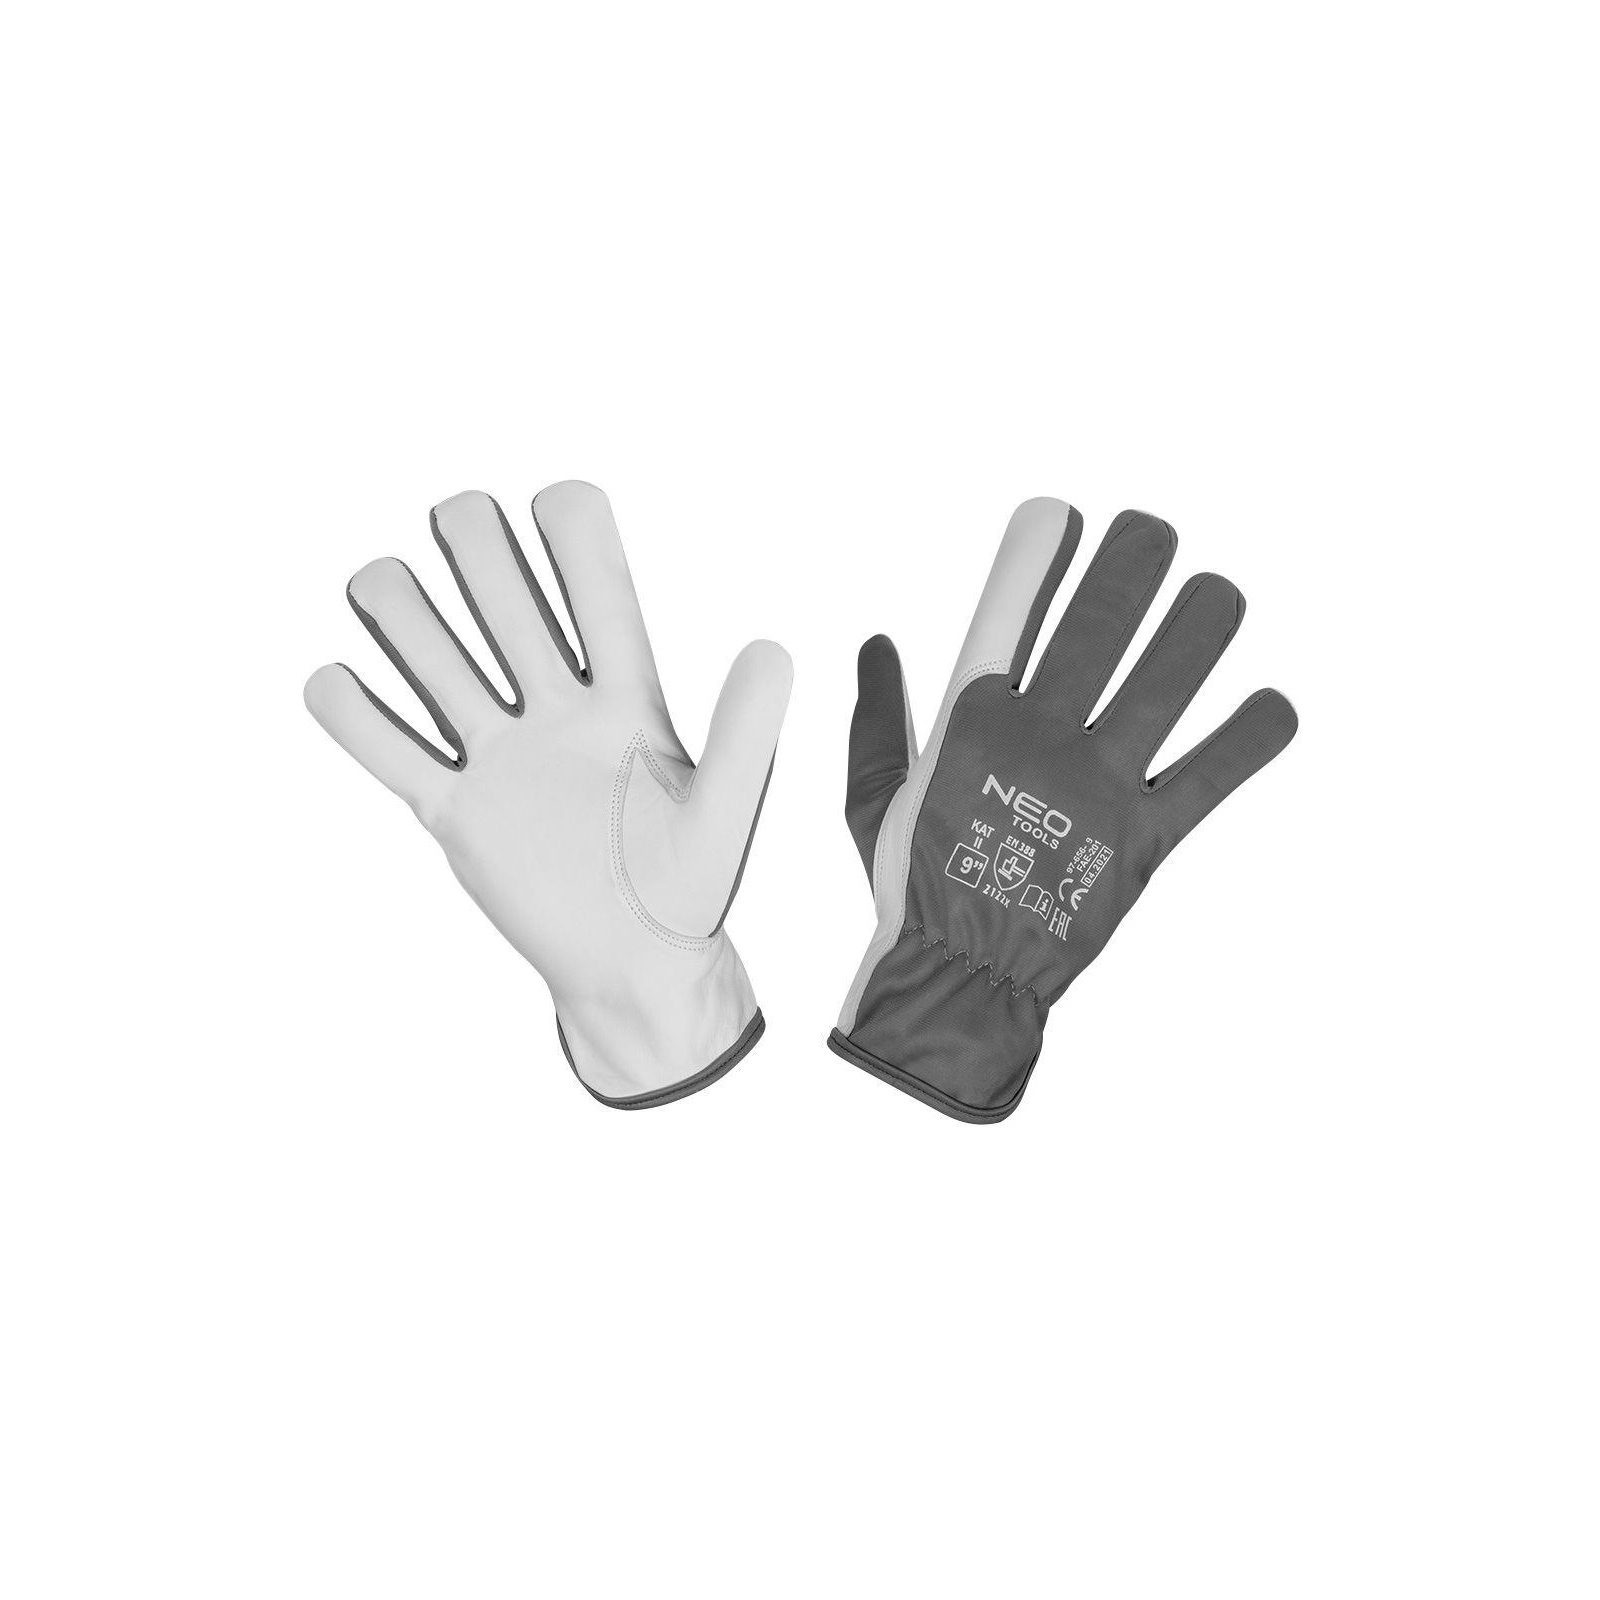 Защитные перчатки Neo Tools козья кожа, р.9, серо-белый (97-656-9)